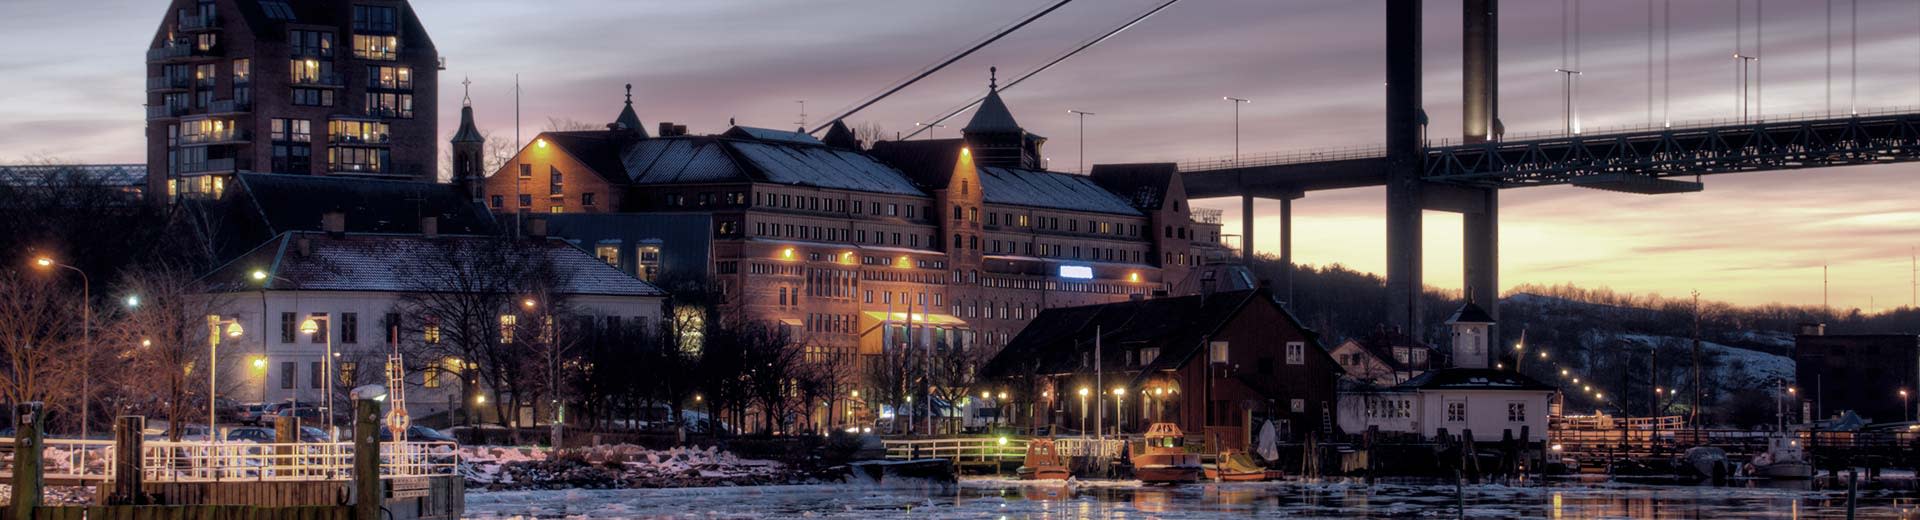 夜幕下哥德堡河畔的历史建筑。